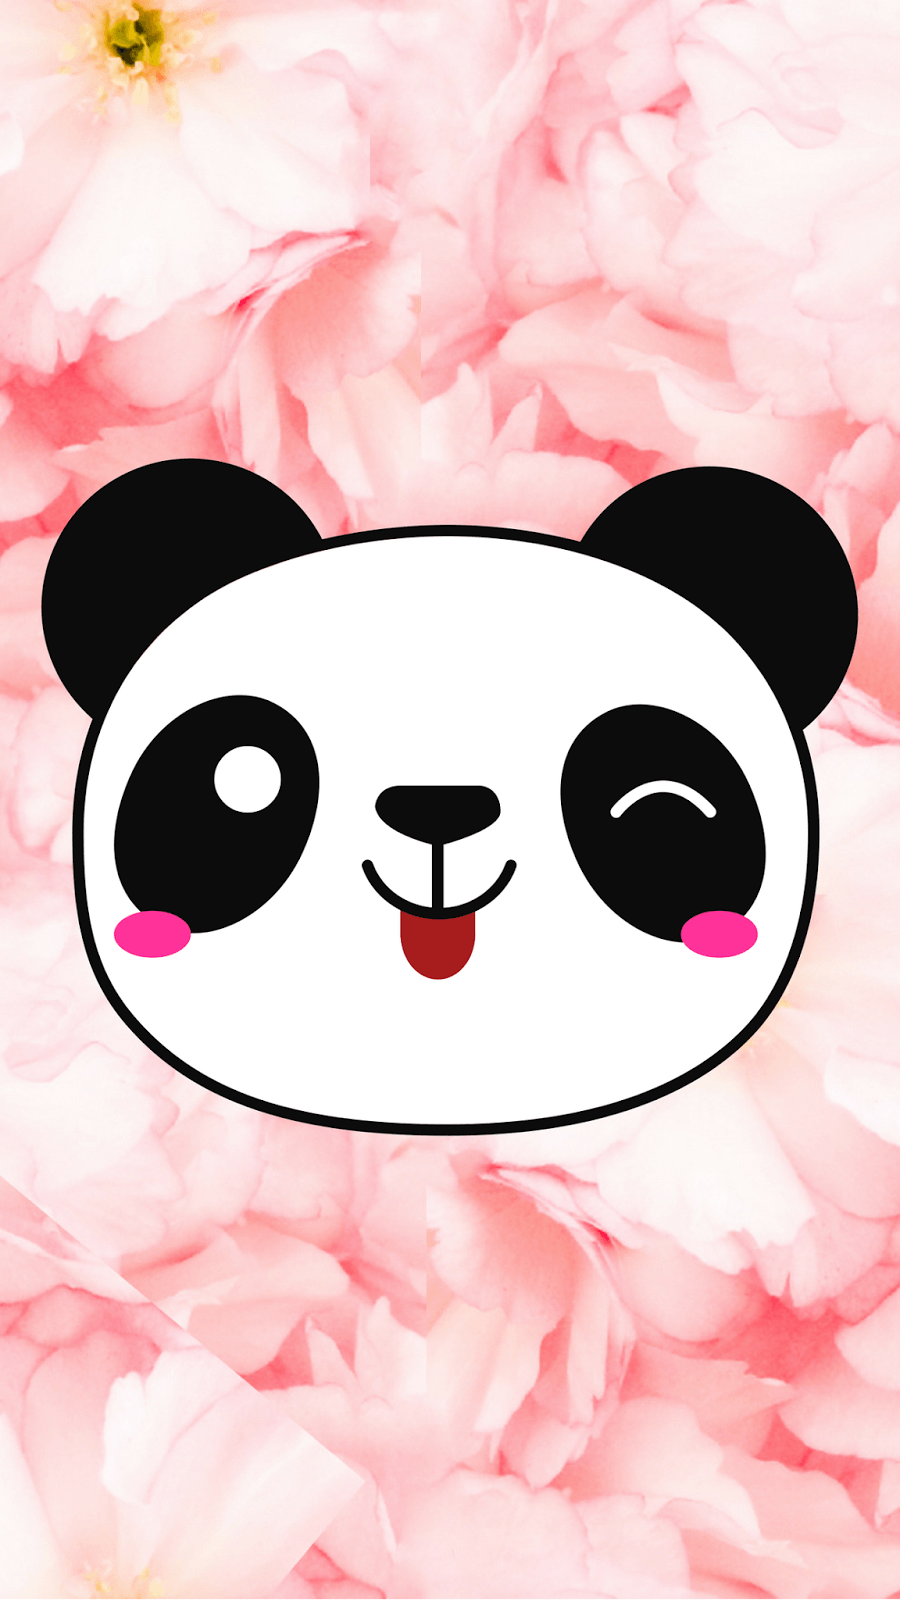 Cute Panda Wallpapers - Top Những Hình Ảnh Đẹp